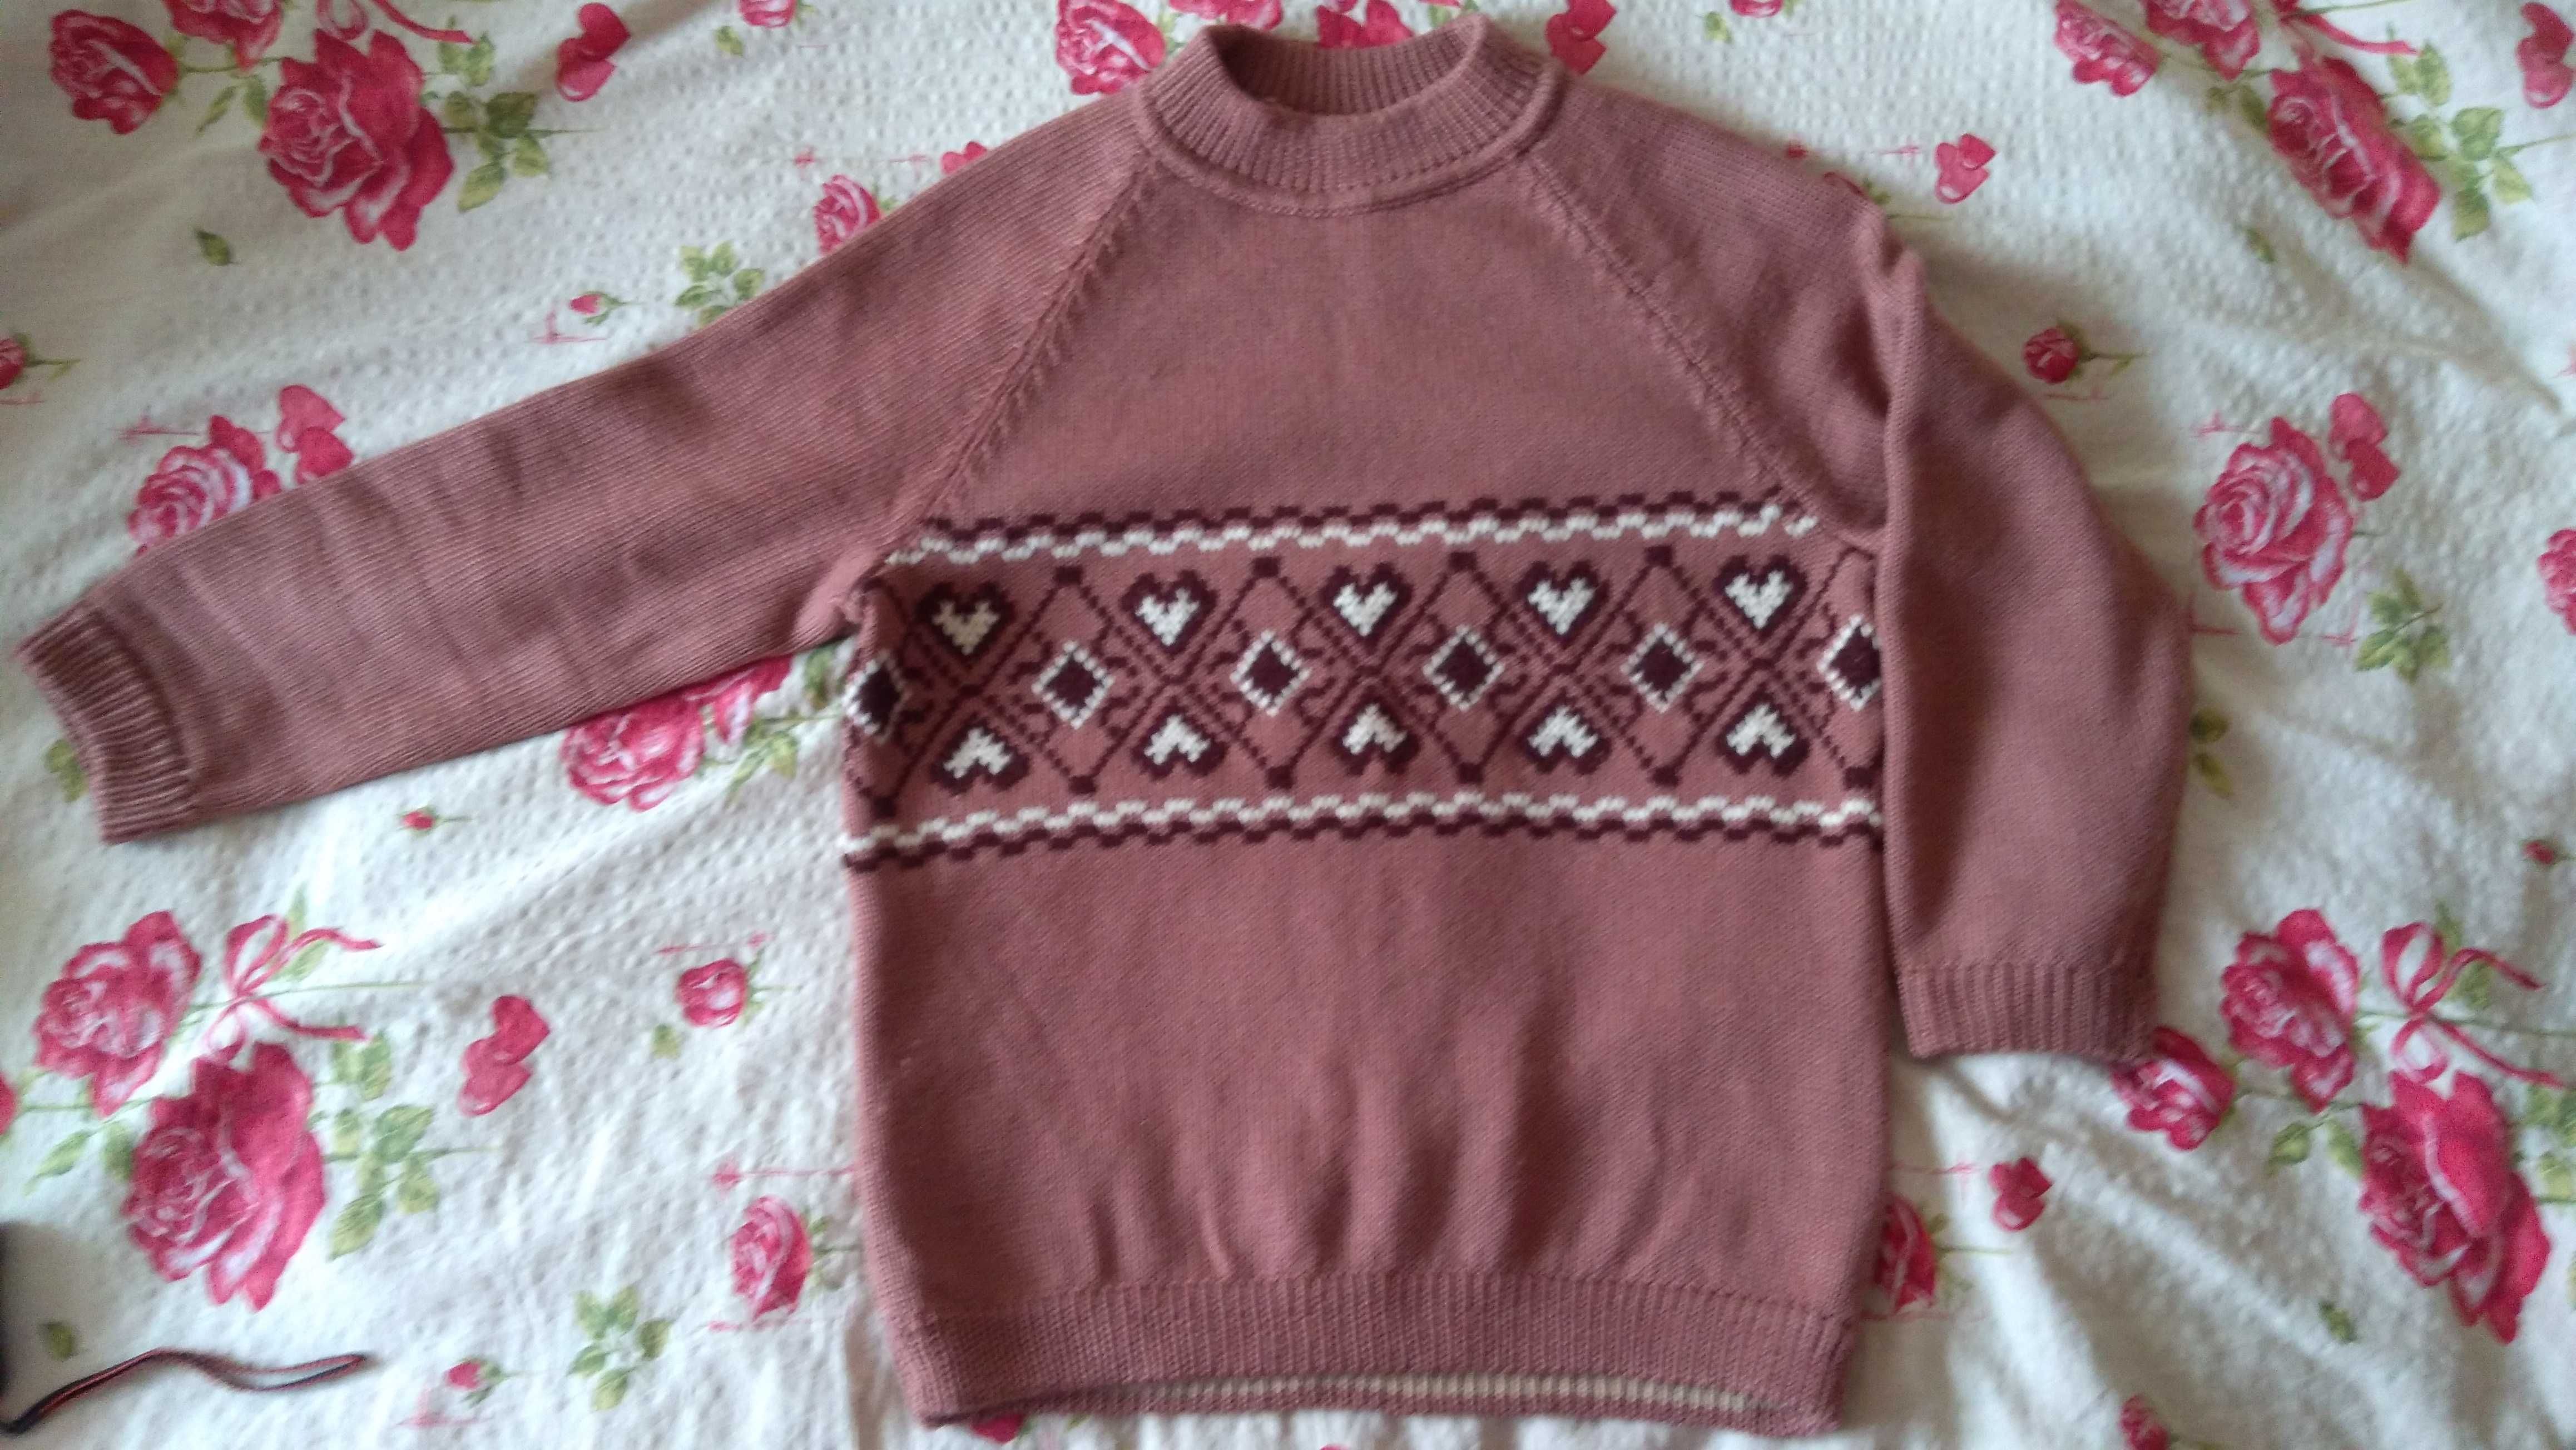 Джемпер свитер НОВЫЙ светло-коричневый цвет ШЕРСТЬ 52р.Крупная вязка.